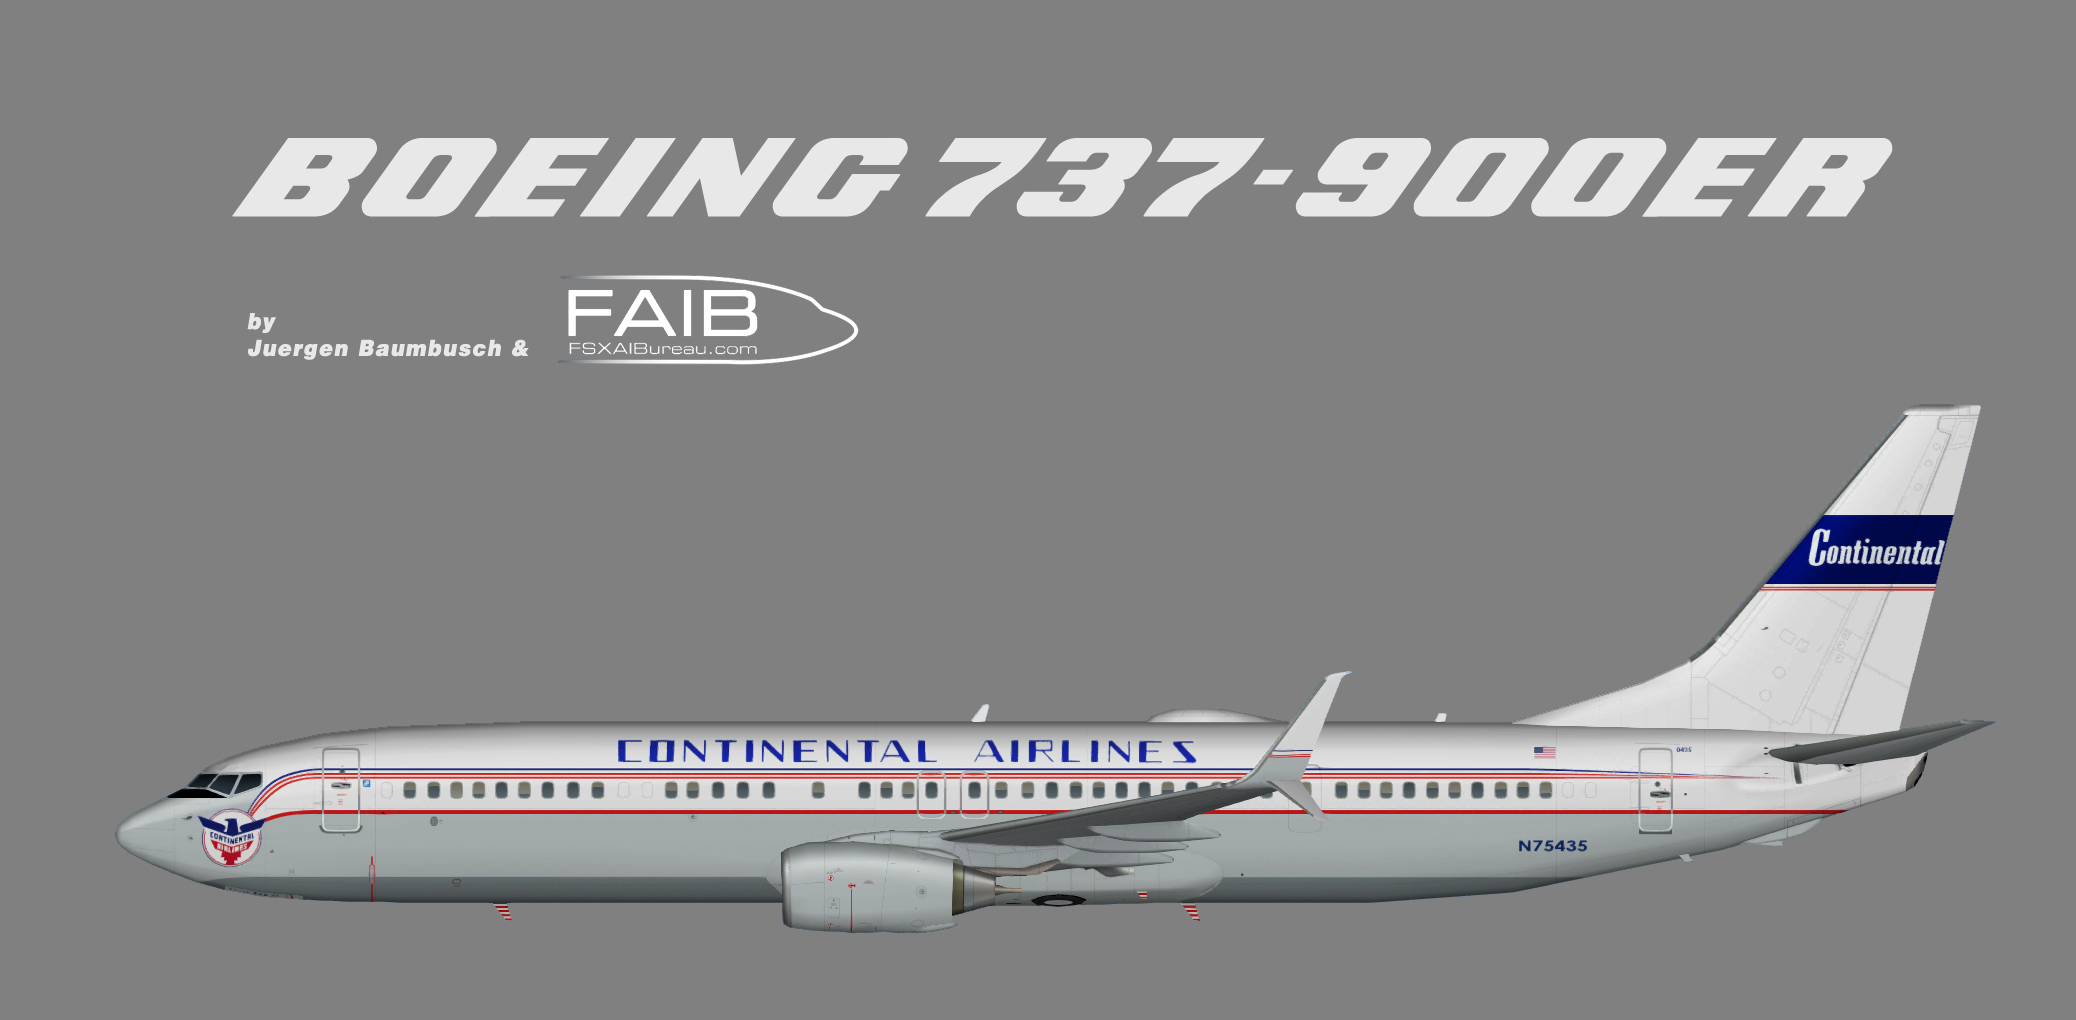 Boeing 737 900er Fsx Downloads